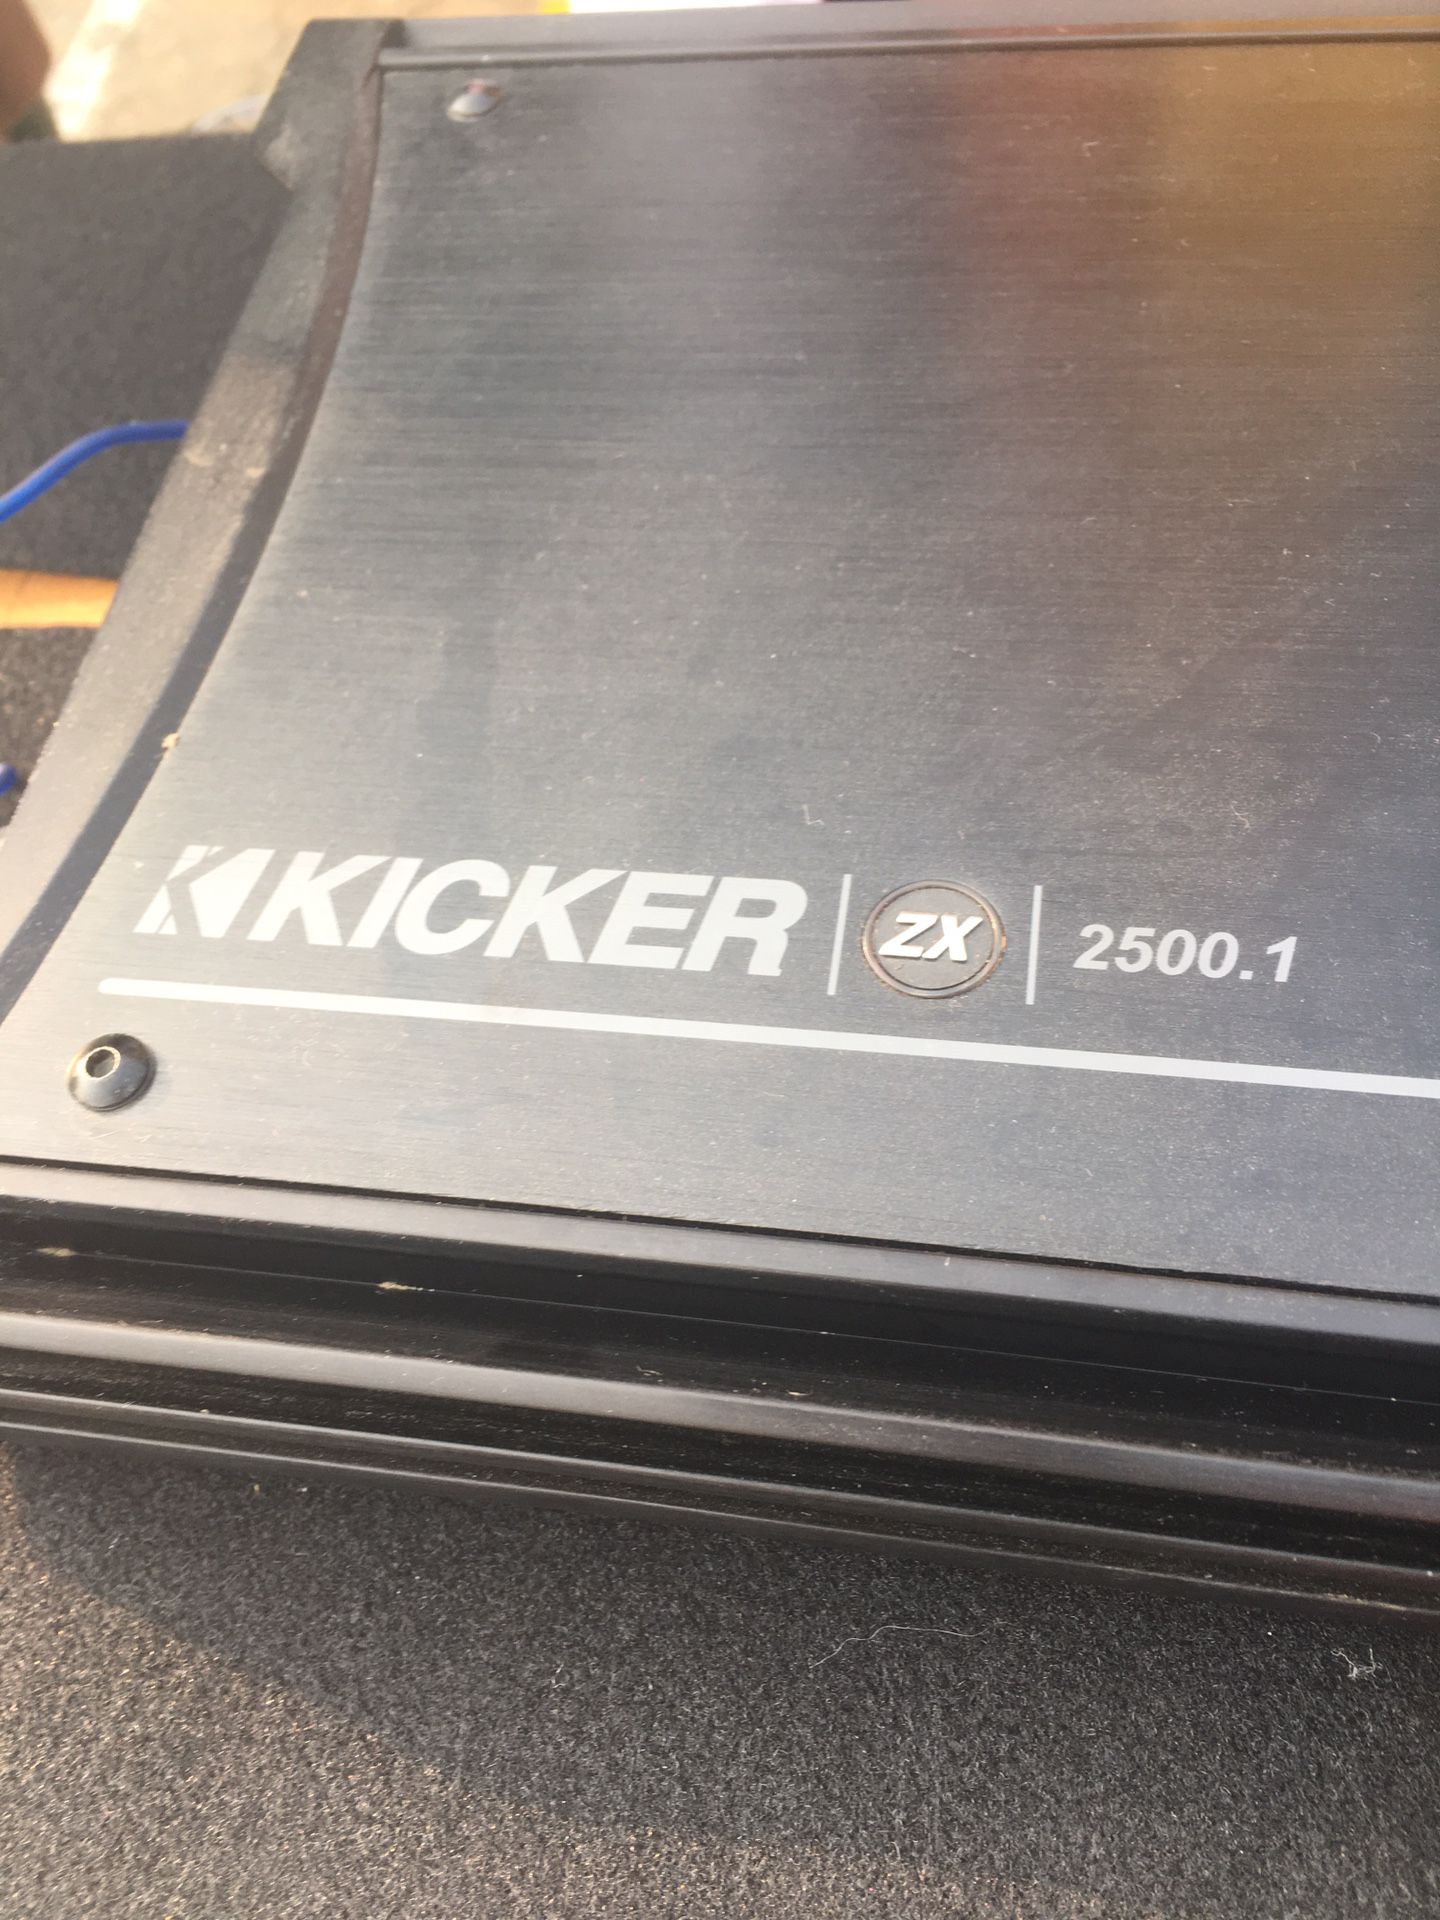 Kicker zx2500.1 amp